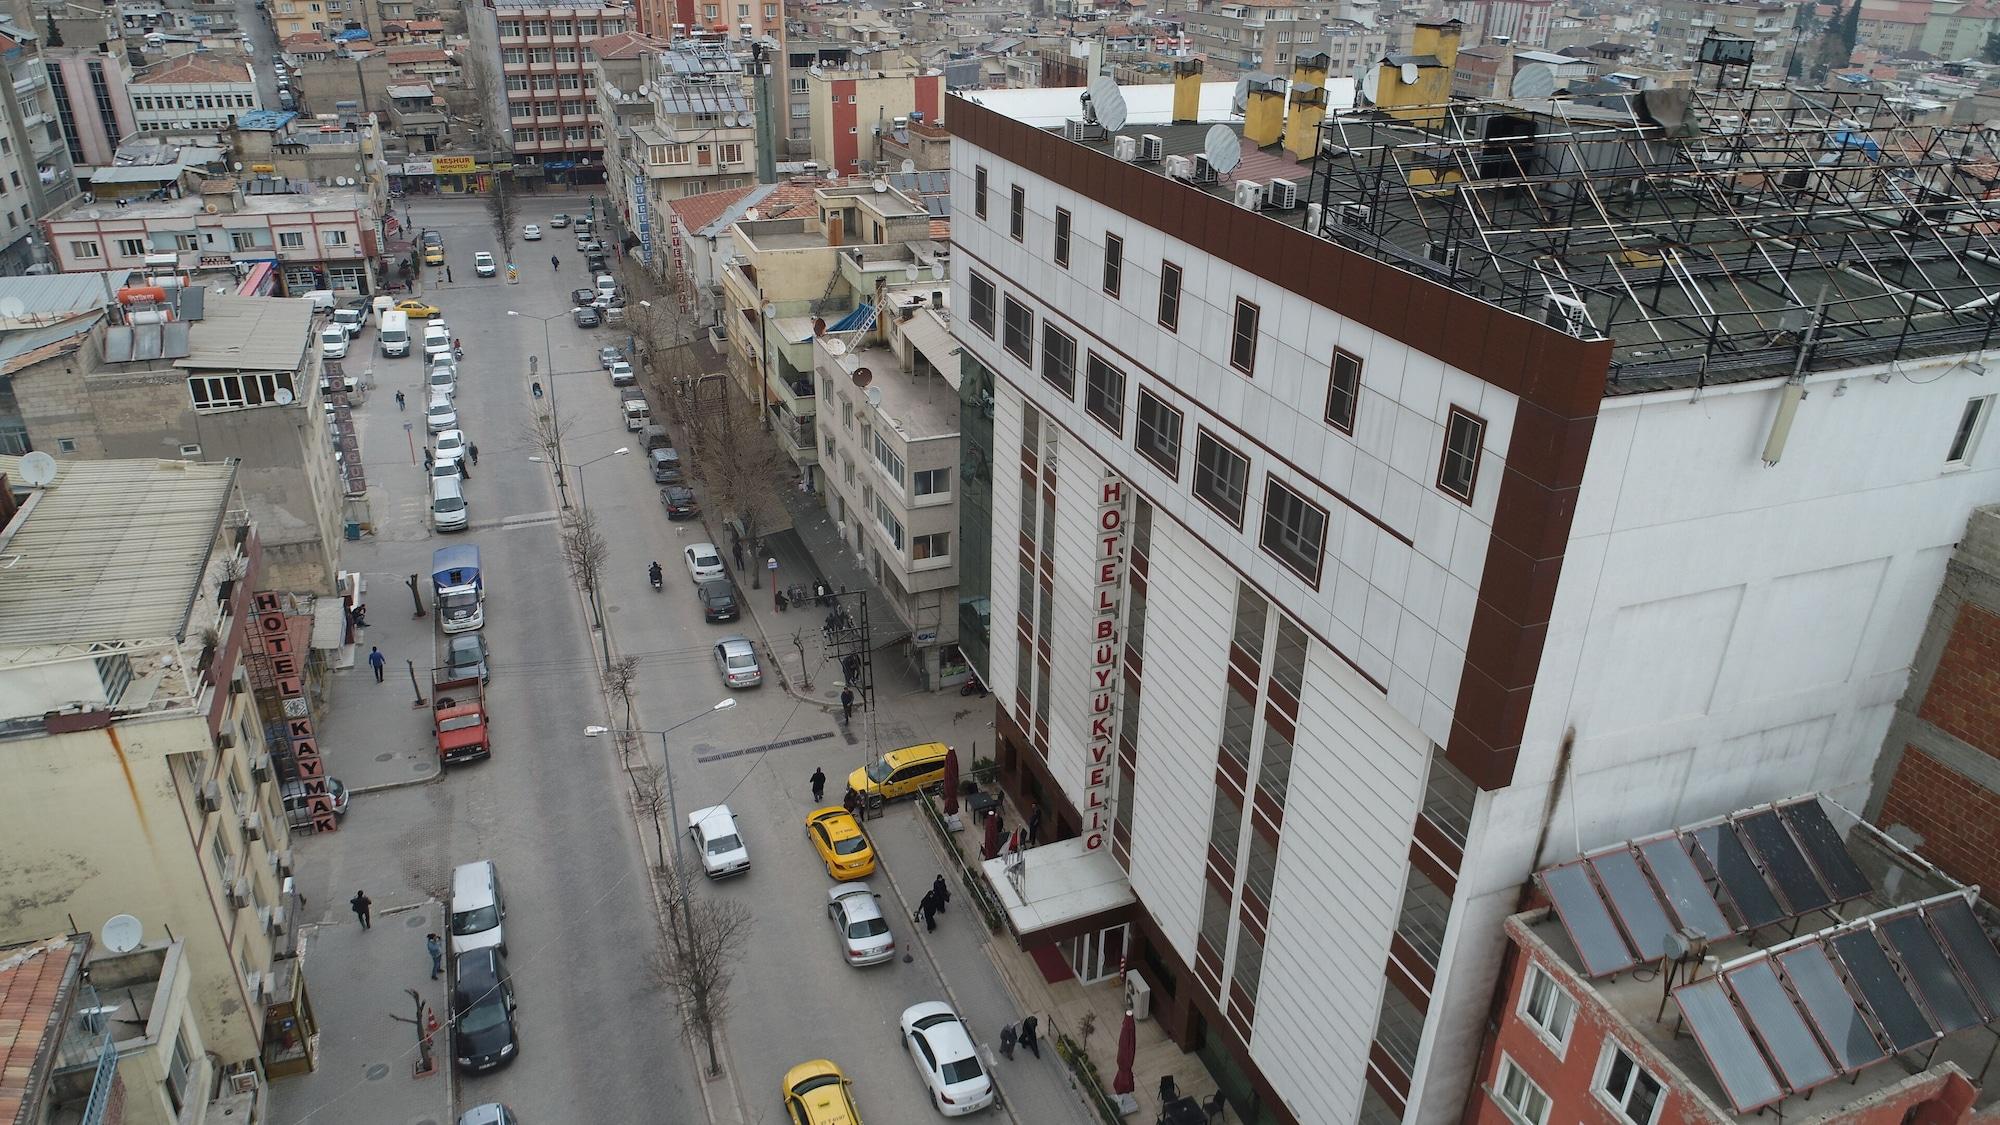 גזיאנטפ Buyuk Velic Hotel מראה חיצוני תמונה